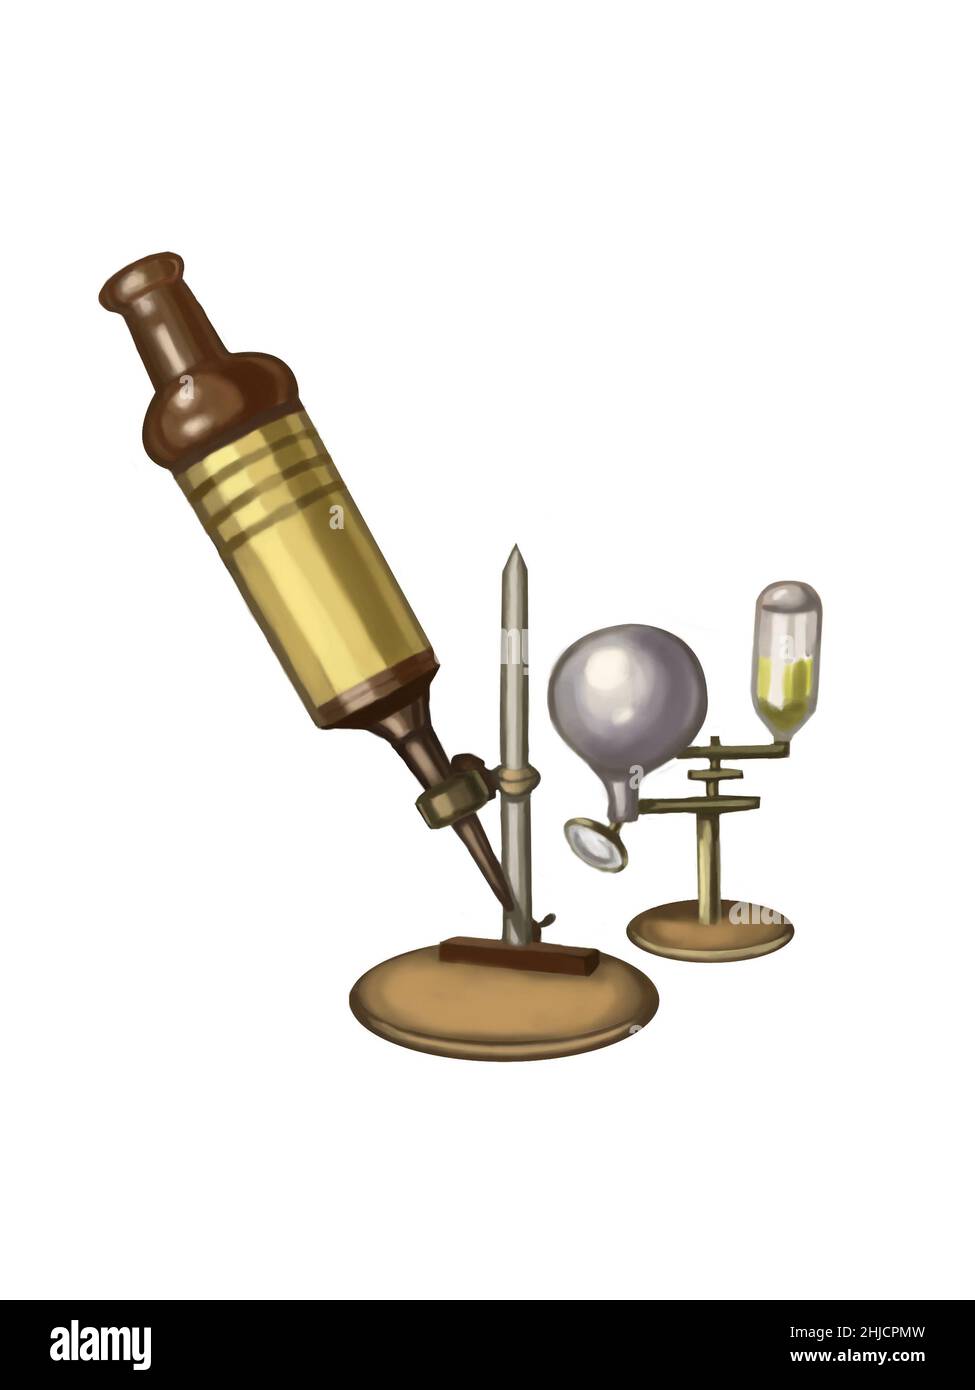 Microscopio di Robert Hooke. Robert Hooke (1635-1703) fu uno scienziato britannico che fece numerose scoperte in campi diversi come l'astronomia e la microbiologia. Il suo nome è ricordato nella Legge di Hooke, che mette in relazione il carico su una molla alla sua estensione. La 'Micrographia' di Hooke, che descrive le sue osservazioni al microscopio, fu pubblicata nel 1665. Foto Stock